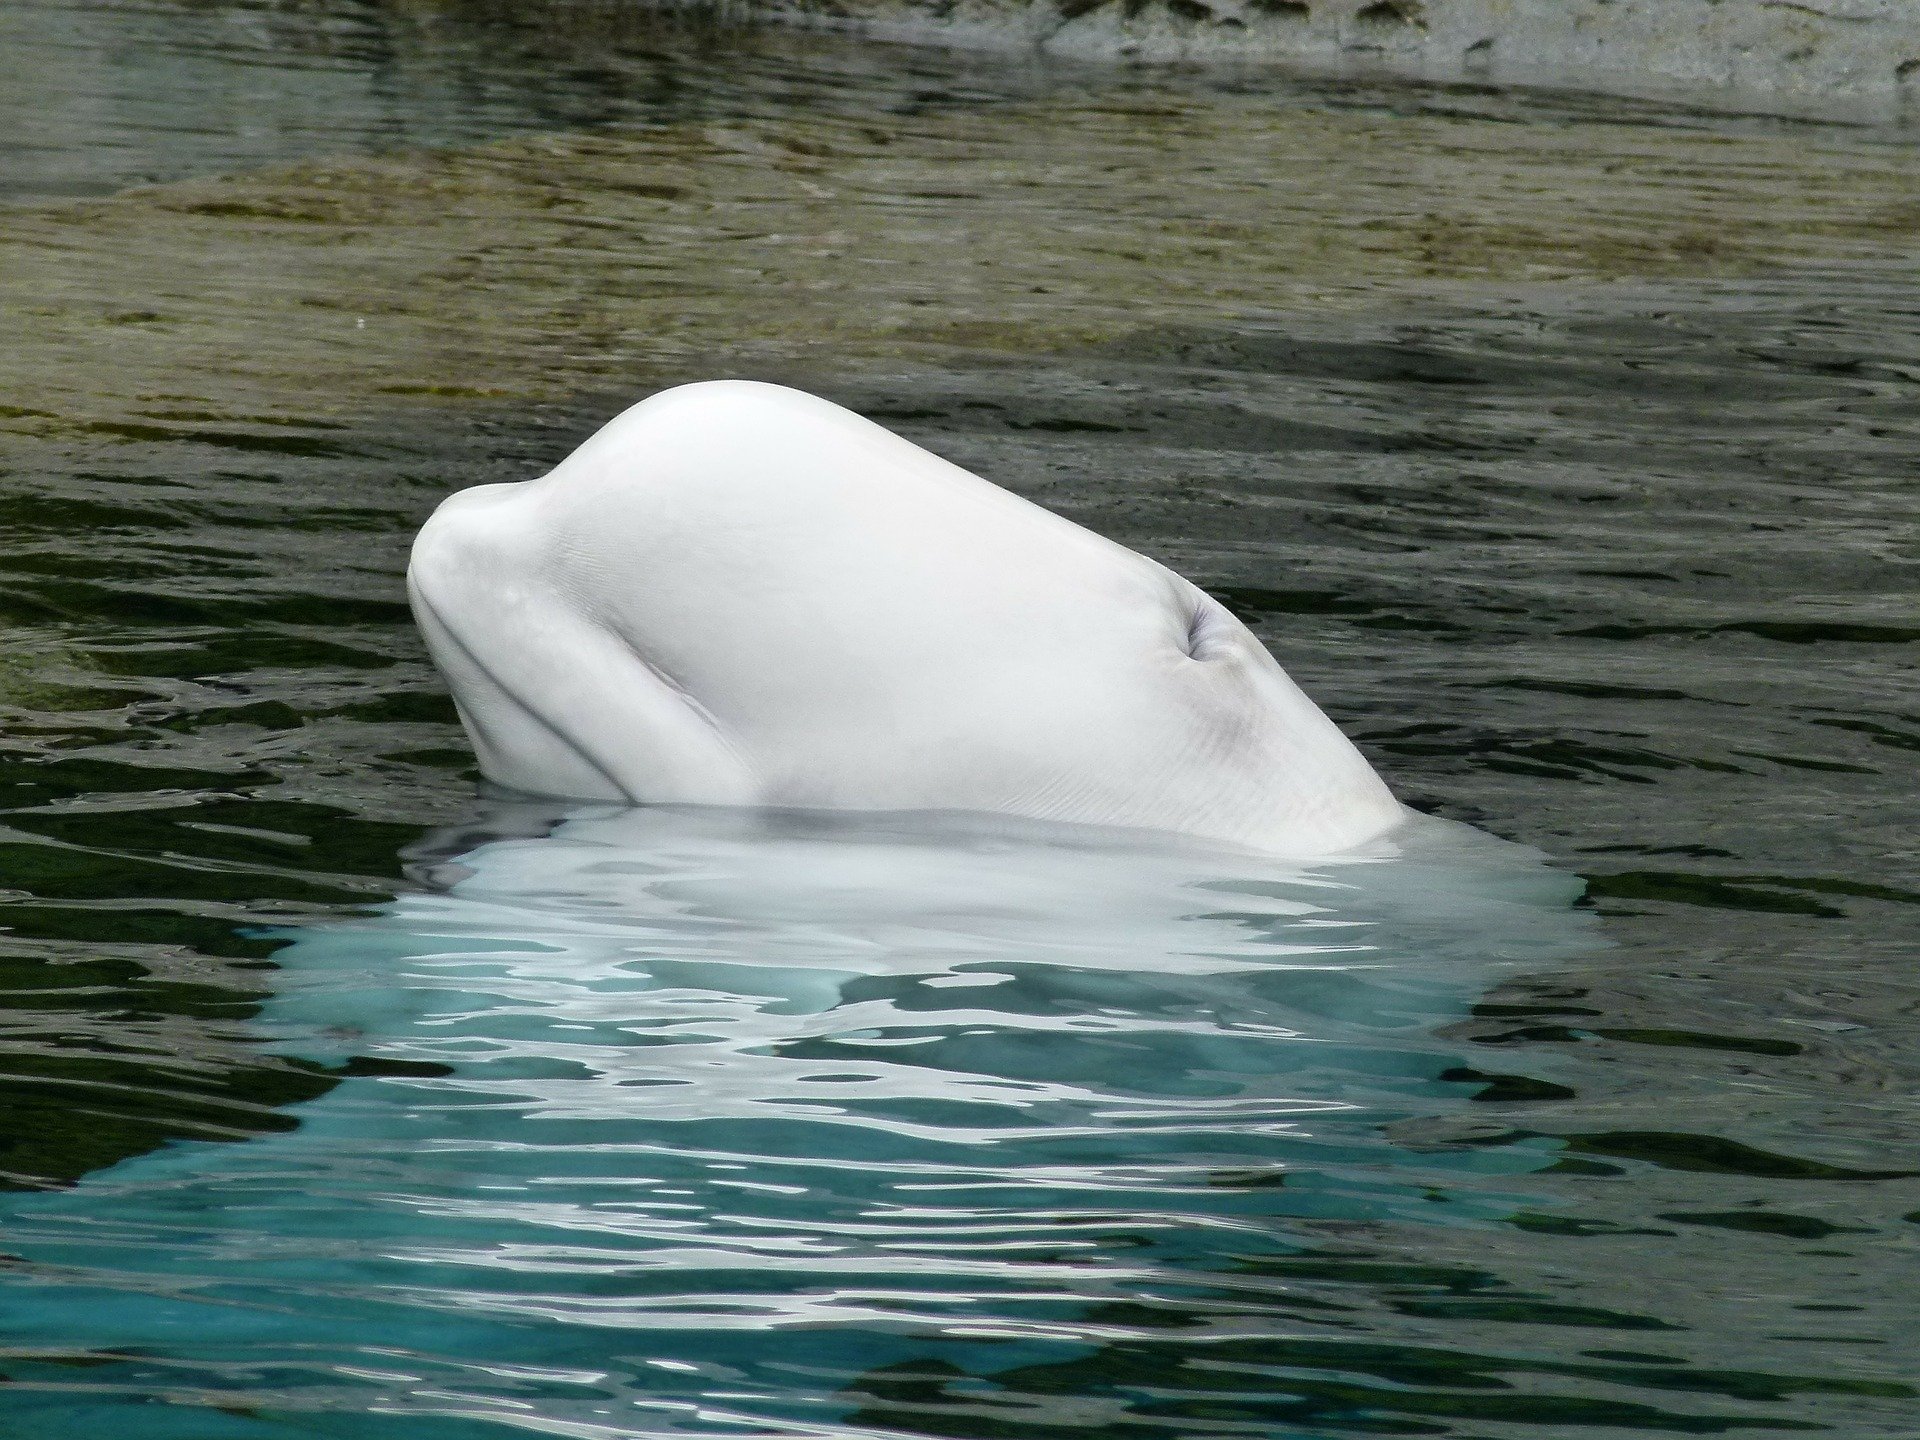 Beluga oder Weisswal Steckbrief – Lebensweise, Fortpflanzung, wirtschaftliche Bedeutung